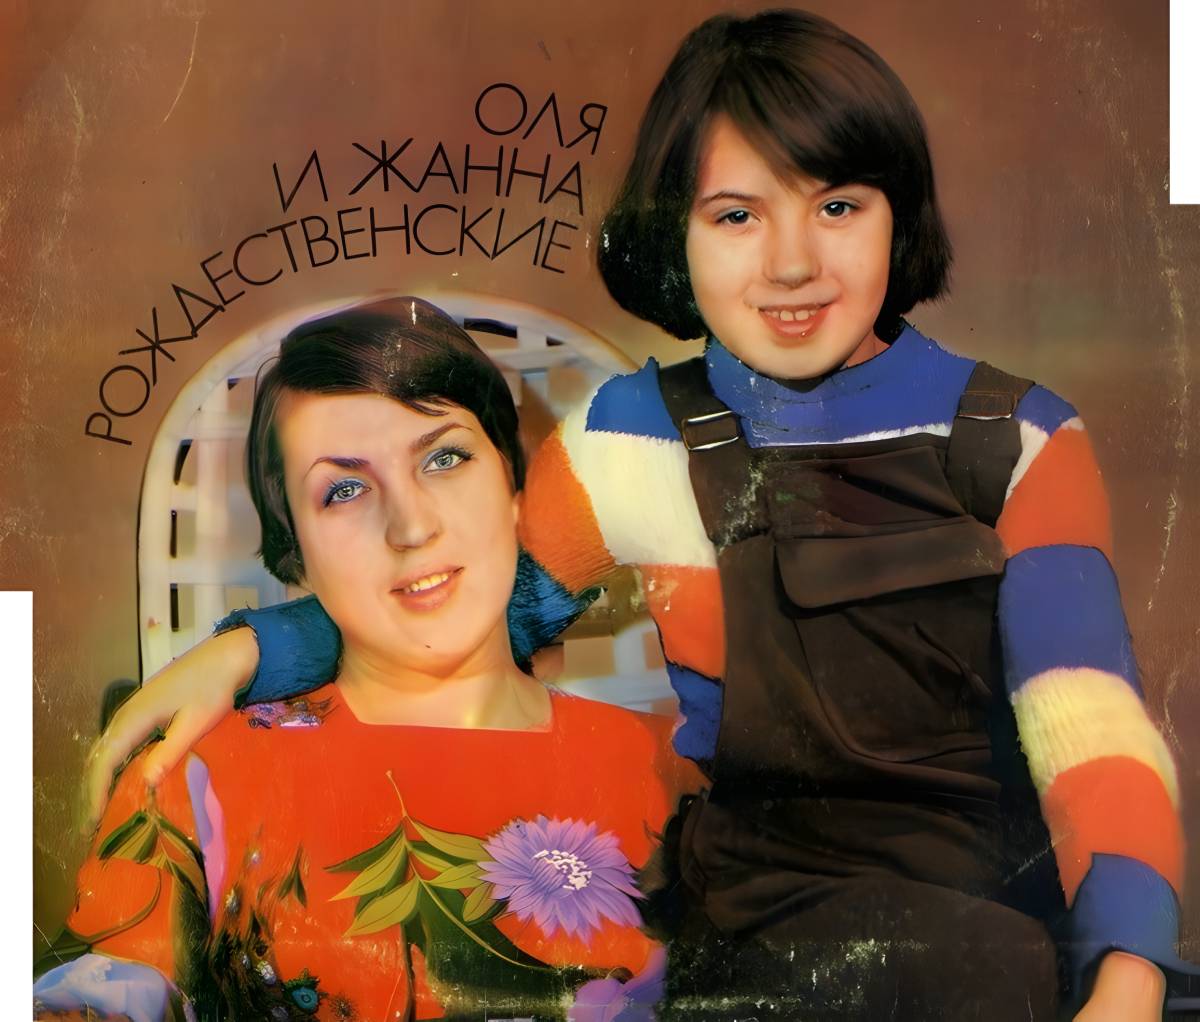 Olga Rozhdestvenskaya com sua mãe